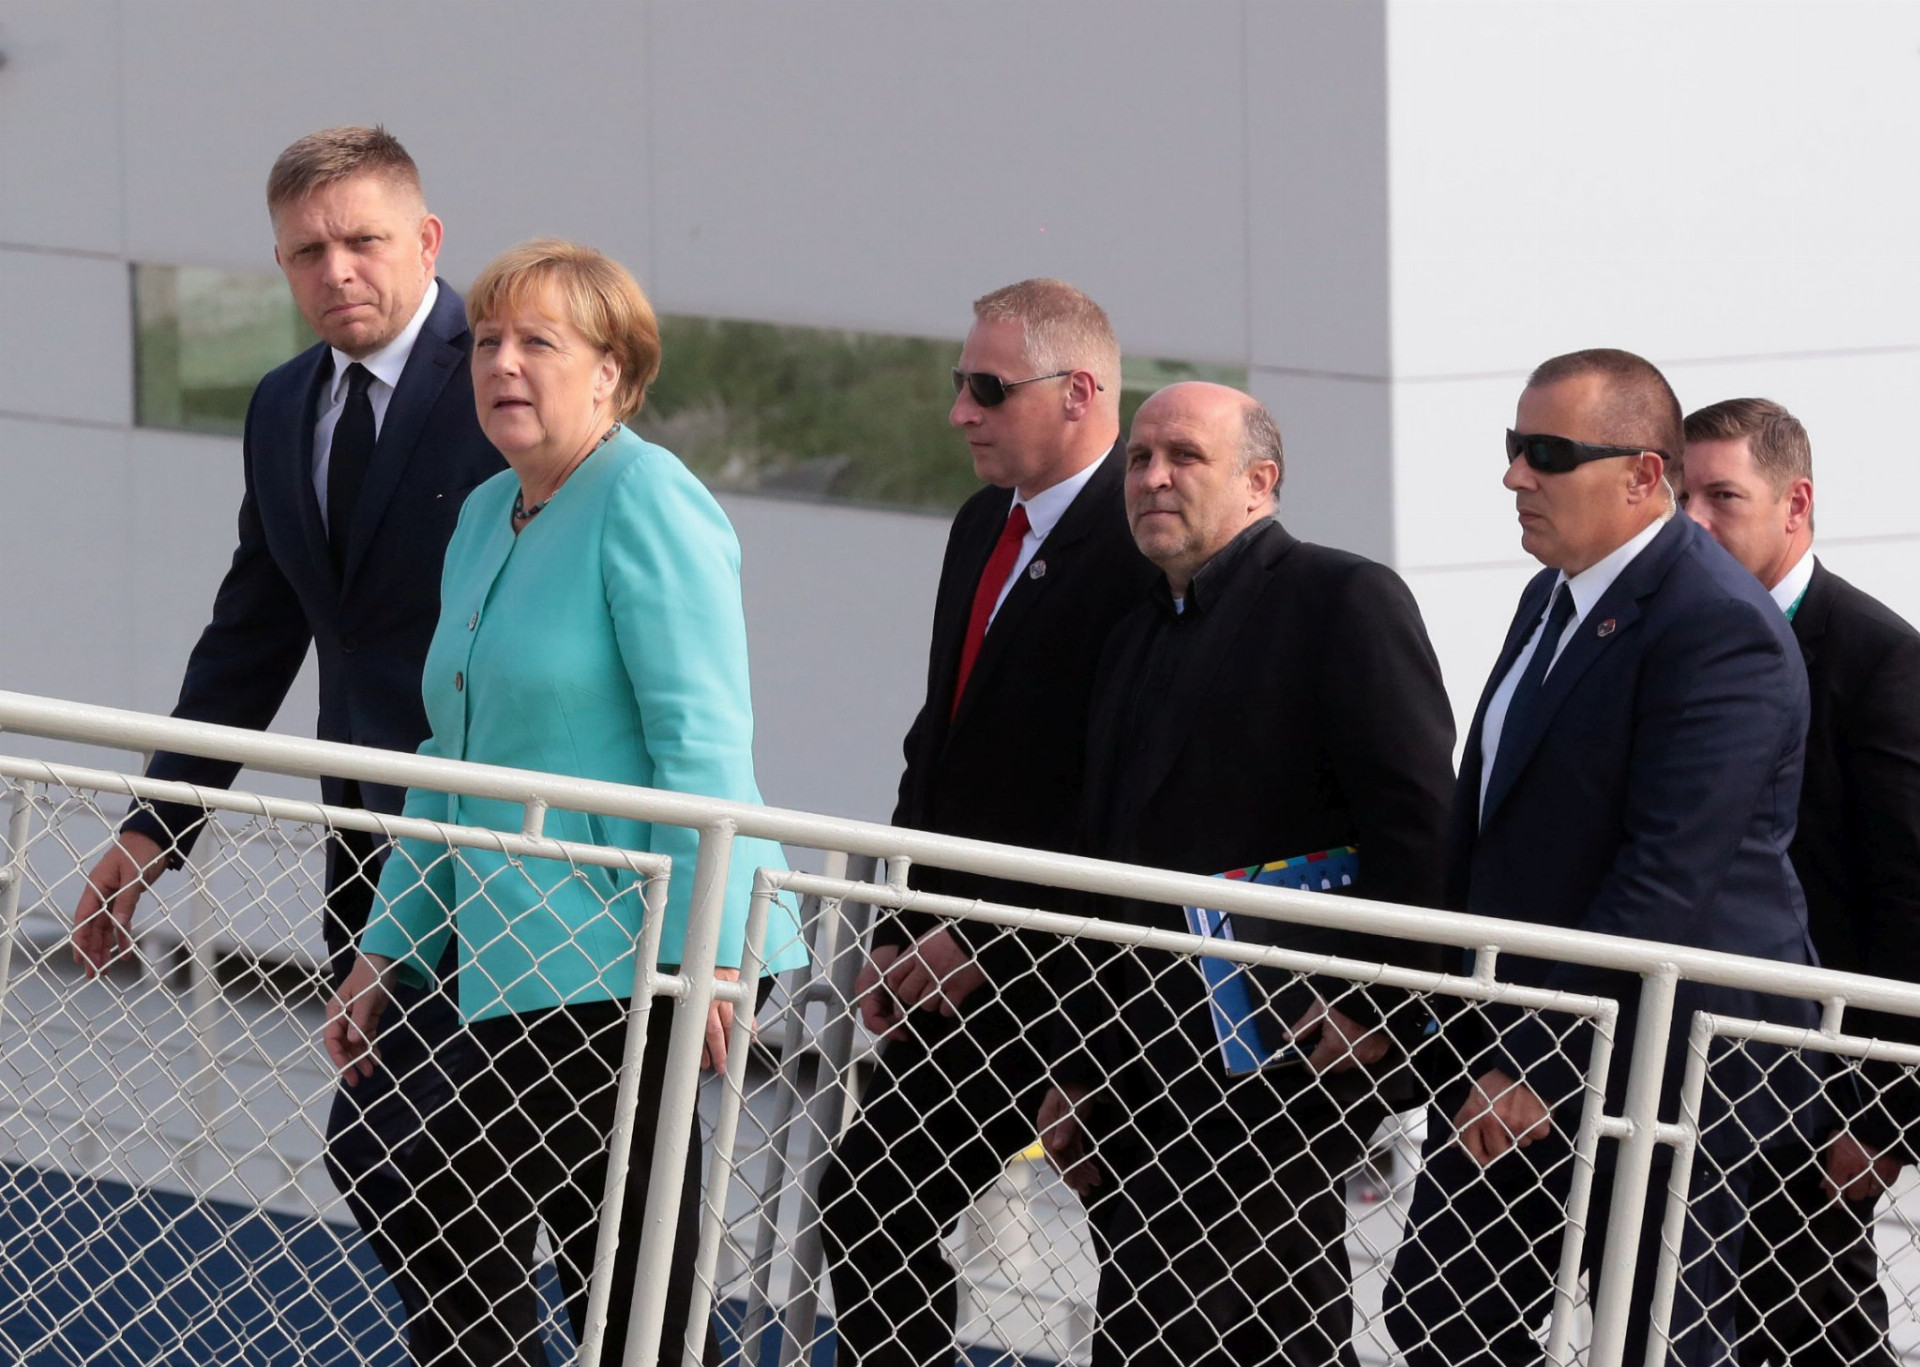 Predsednícku pozíciu dôležitej inštitúcie sme si vyskúšali už v druhom polroku 2016, keď Slovensko úspešne stálo na čele Rady Európskej únie. Vtedajší premiér Robert
Fico hostil v septembri v Bratislave nemeckú kancelárku Angelu Merkelovú aj lídrov ostatných 26 krajín Únie.